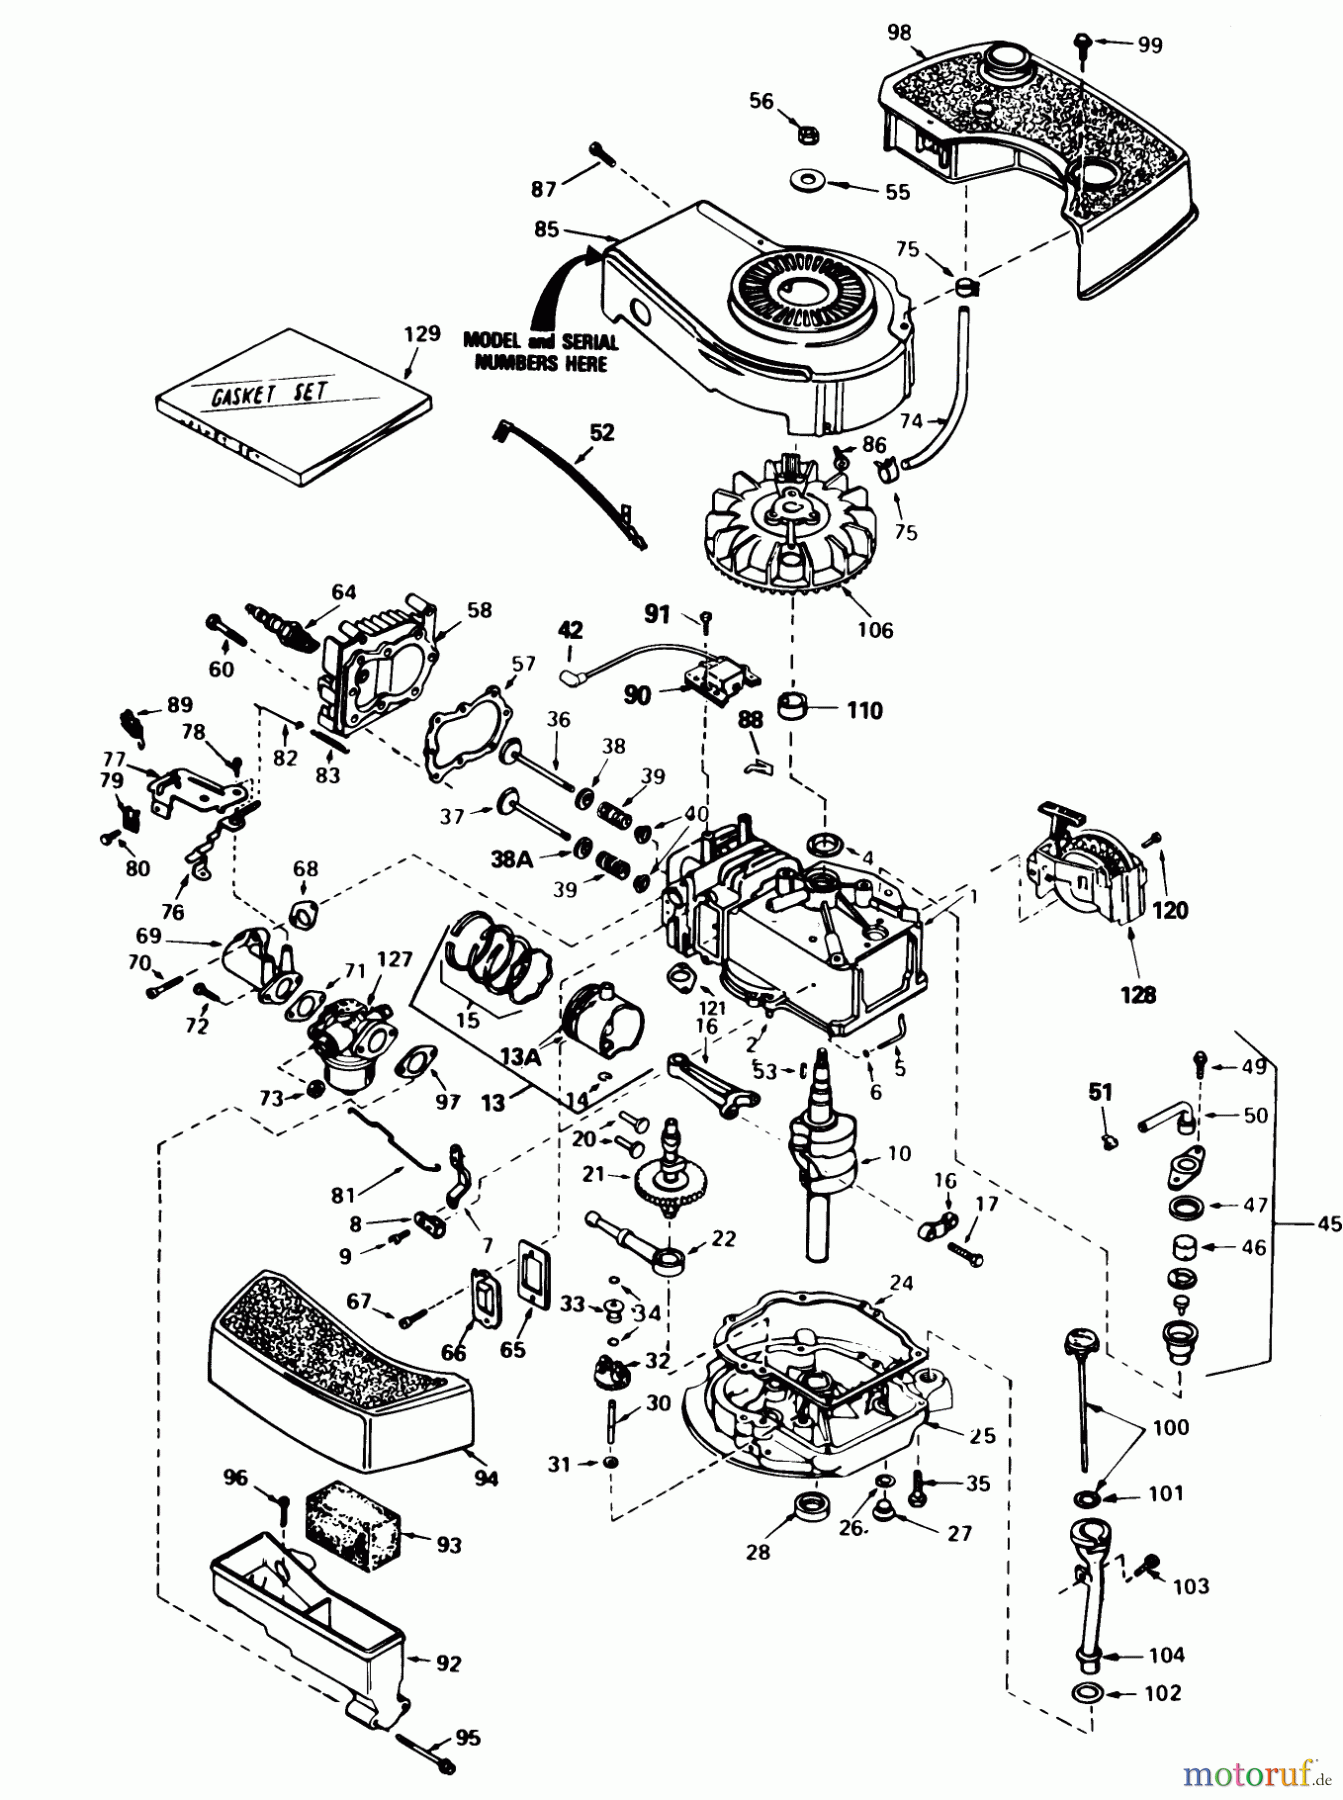  Toro Neu Mowers, Walk-Behind Seite 1 16299C - Toro Lawnmower, 1987 (7000001-7999999) ENGINE TECUMSEH MODEL NO. TNT 100-10100E